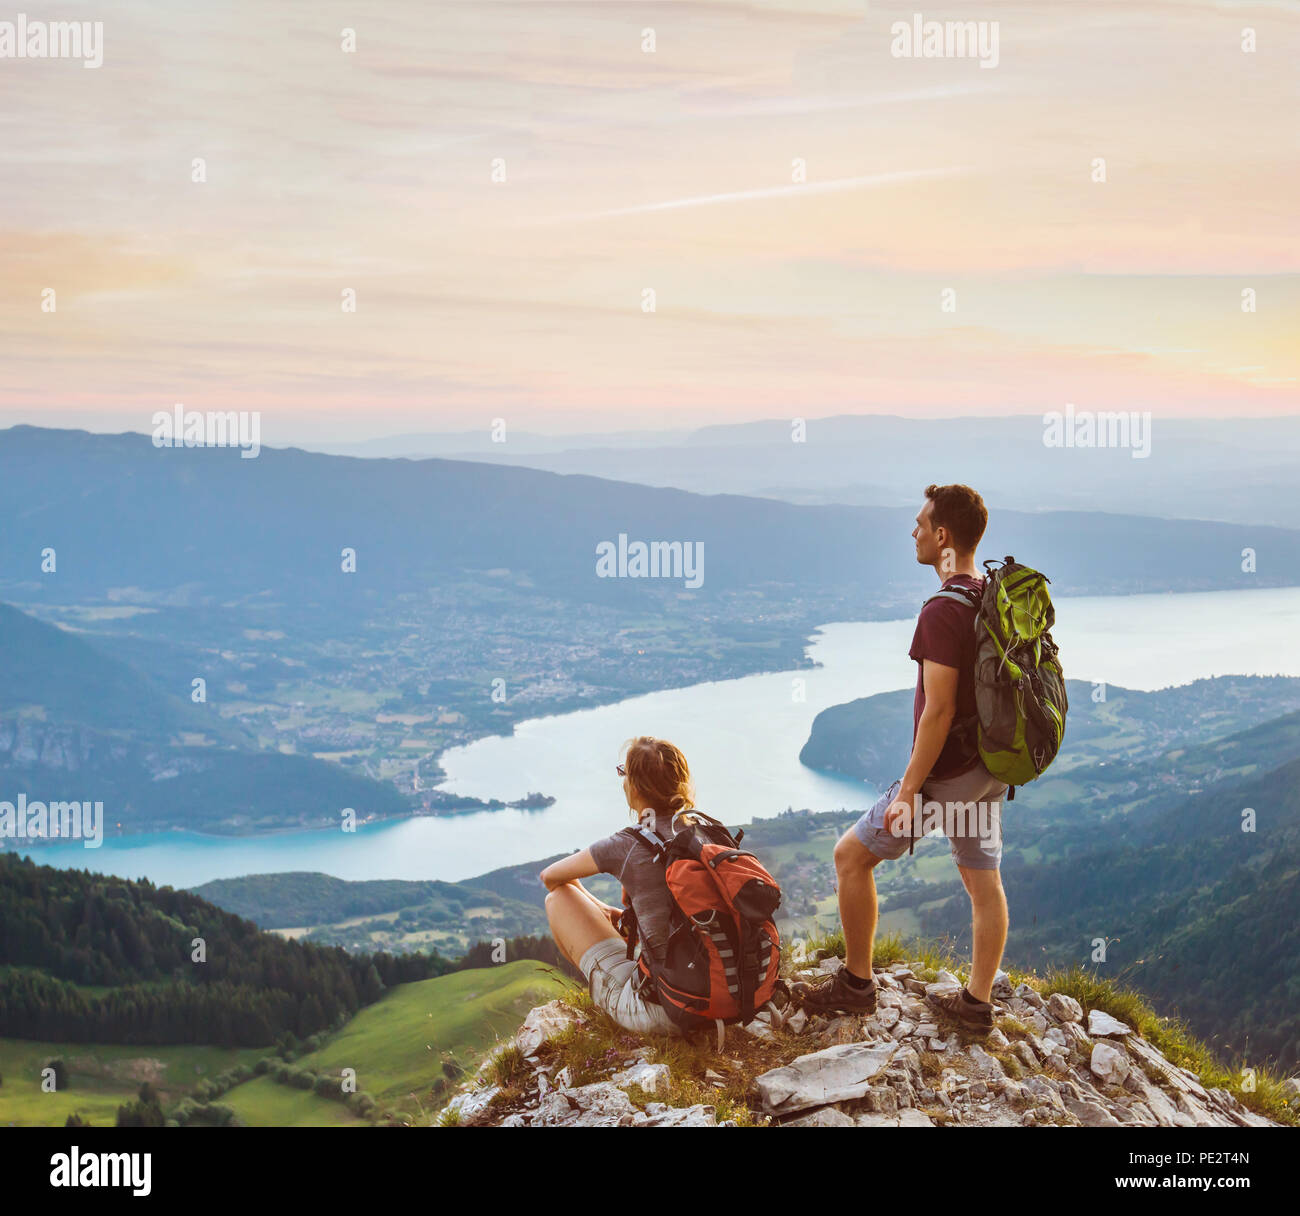 Couple de randonneurs sur relaxant haut de montagne avec belle vue panoramique sur l'extérieur, deux touristes backpackers Au cours de la randonnée, de miel d'aventure Banque D'Images